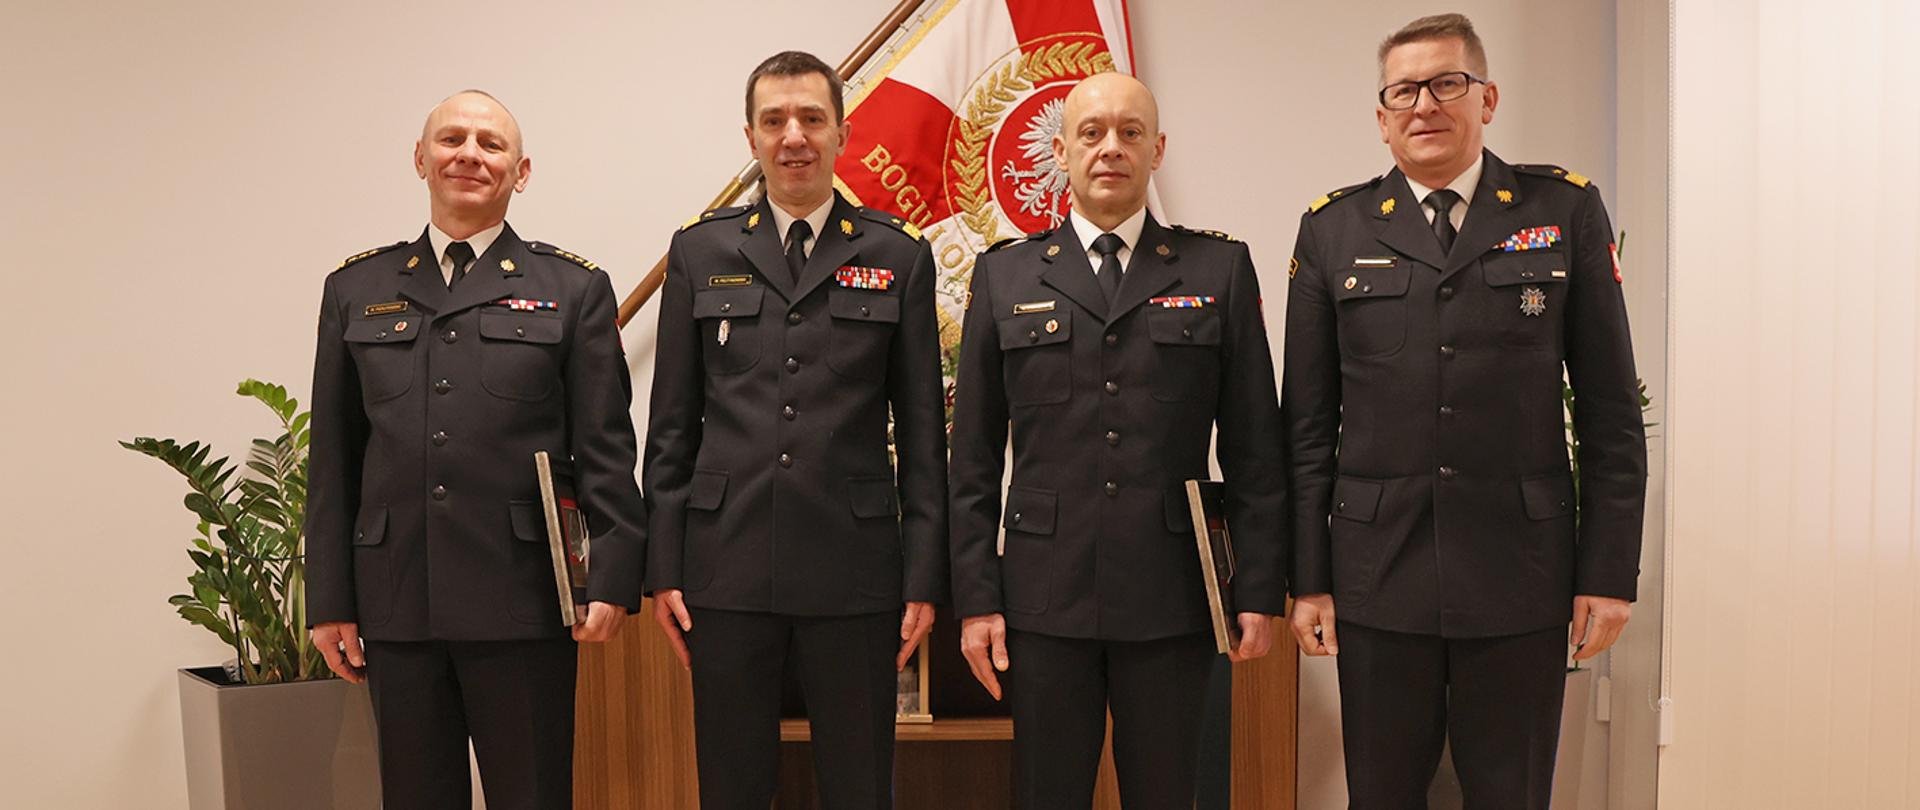 Zdjęcie pamiątkowe na tle sztandaru Komendy Głównej Państwowej Straży Pożarnej. Czterej mężczyźni w strażackich mundurach galowych stojący w postawie zadadniczej Dwaj mężczyźni w mundurach generalskich